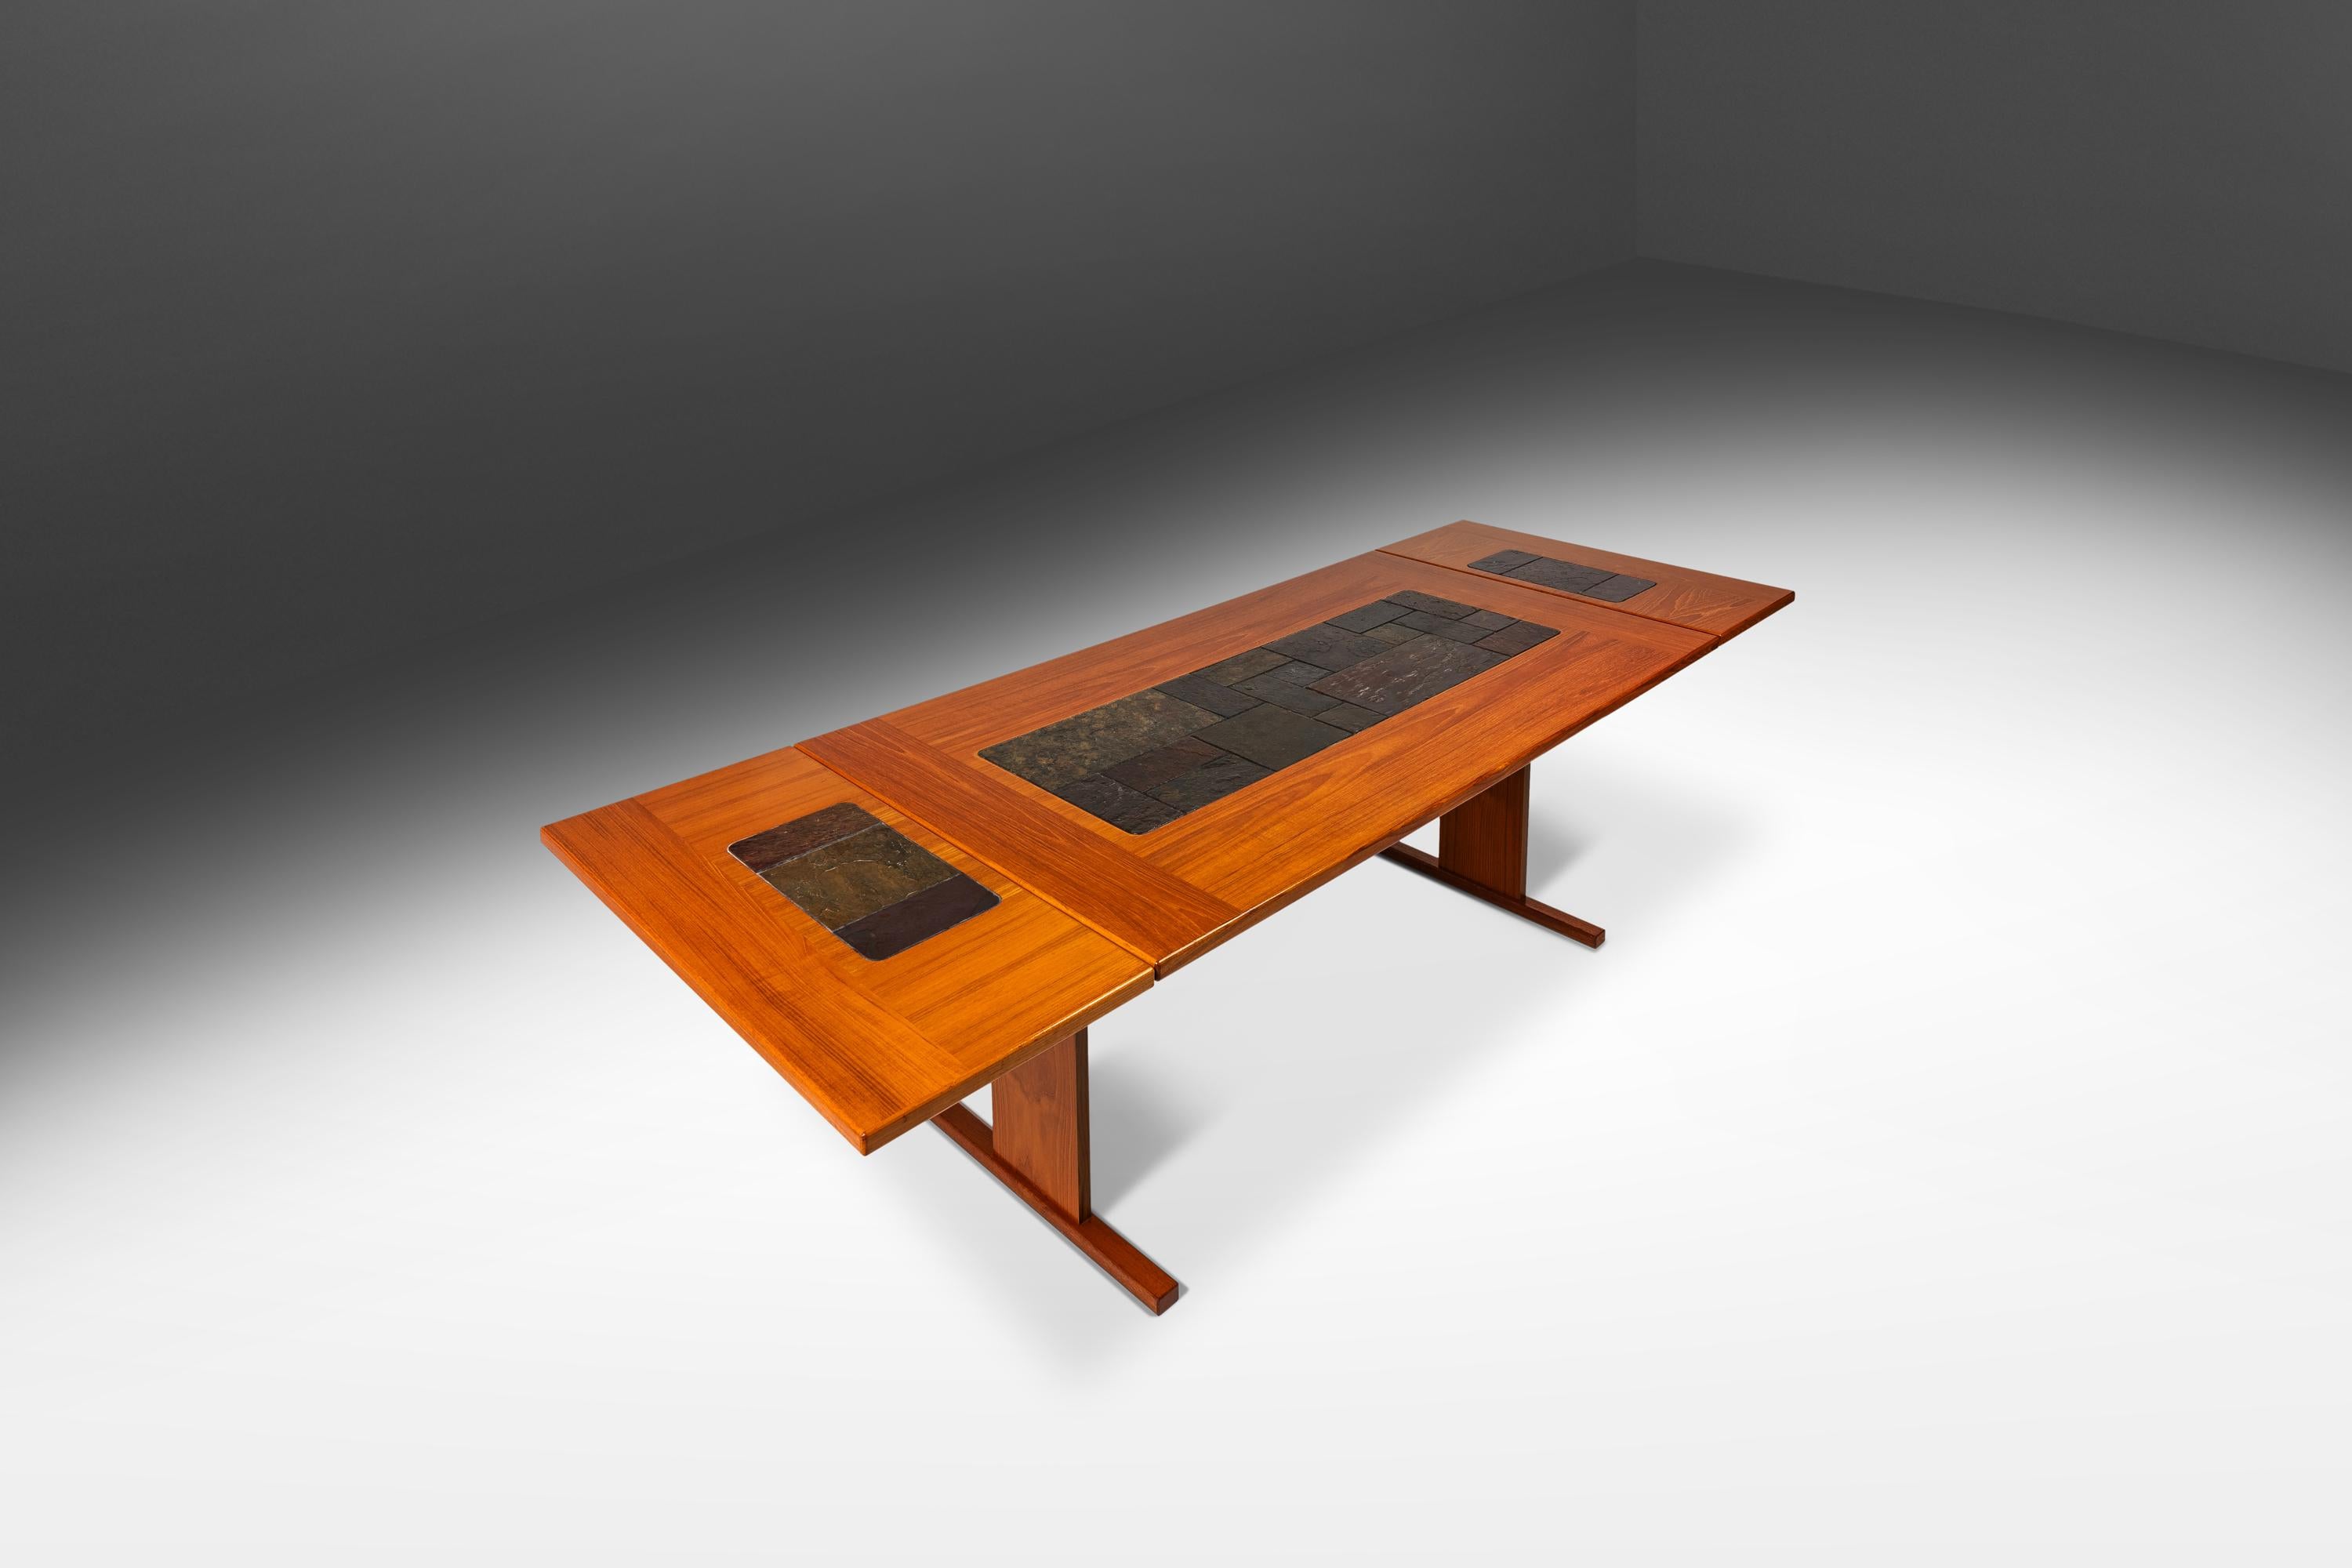 Te presentamos un auténtico tesoro de la modernidad danesa: una excepcional mesa de tablero abatible diseñada por el respetado Poul H. Poulsen. Con un tablero de azulejos de cerámica pintados a mano con intrigantes formas geométricas y un marco de